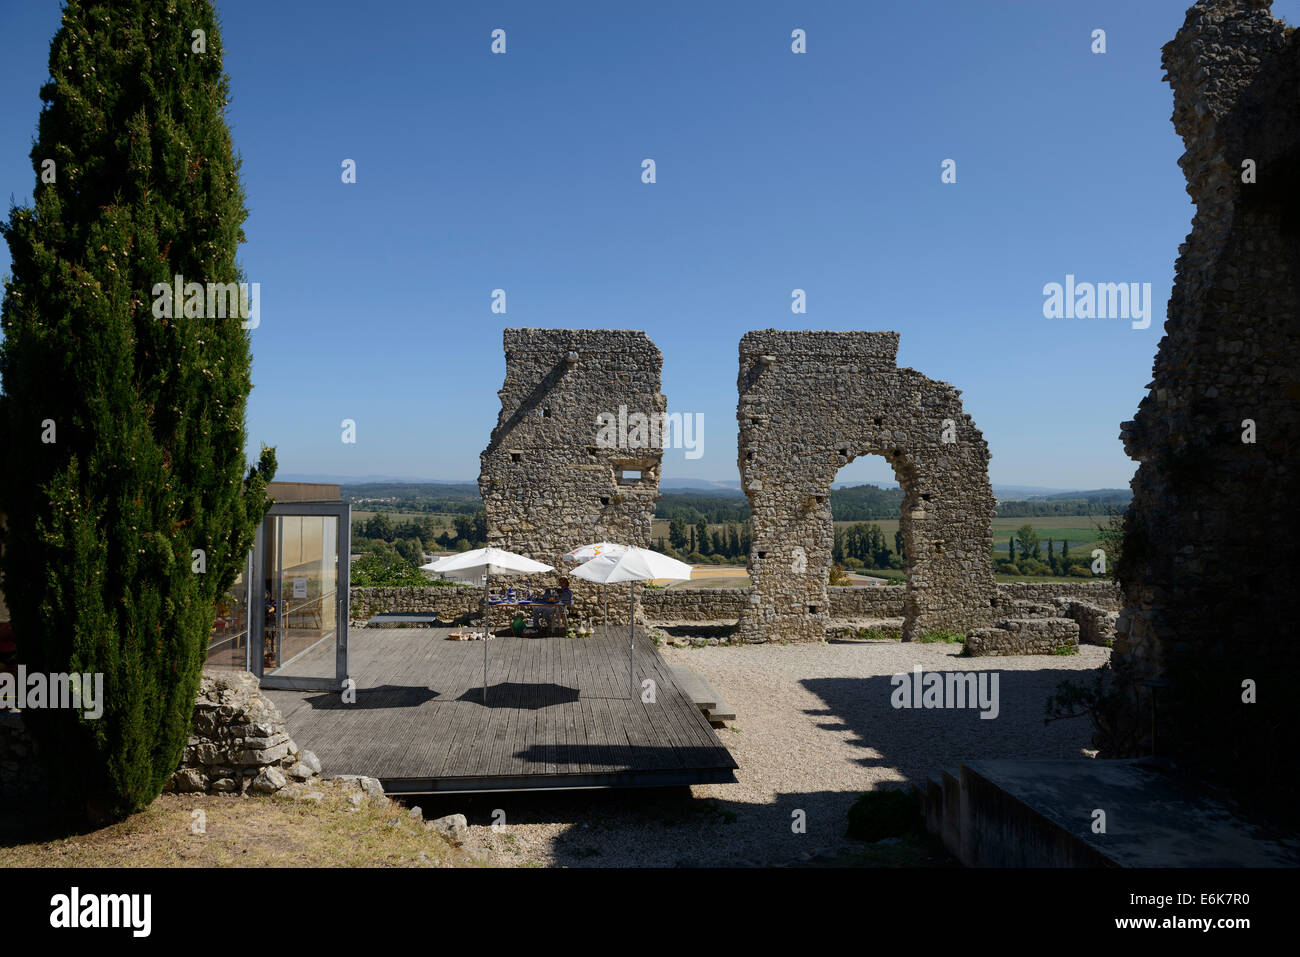 Ruines à un château médiéval à Montemor-o-Velho, Portugal Banque D'Images